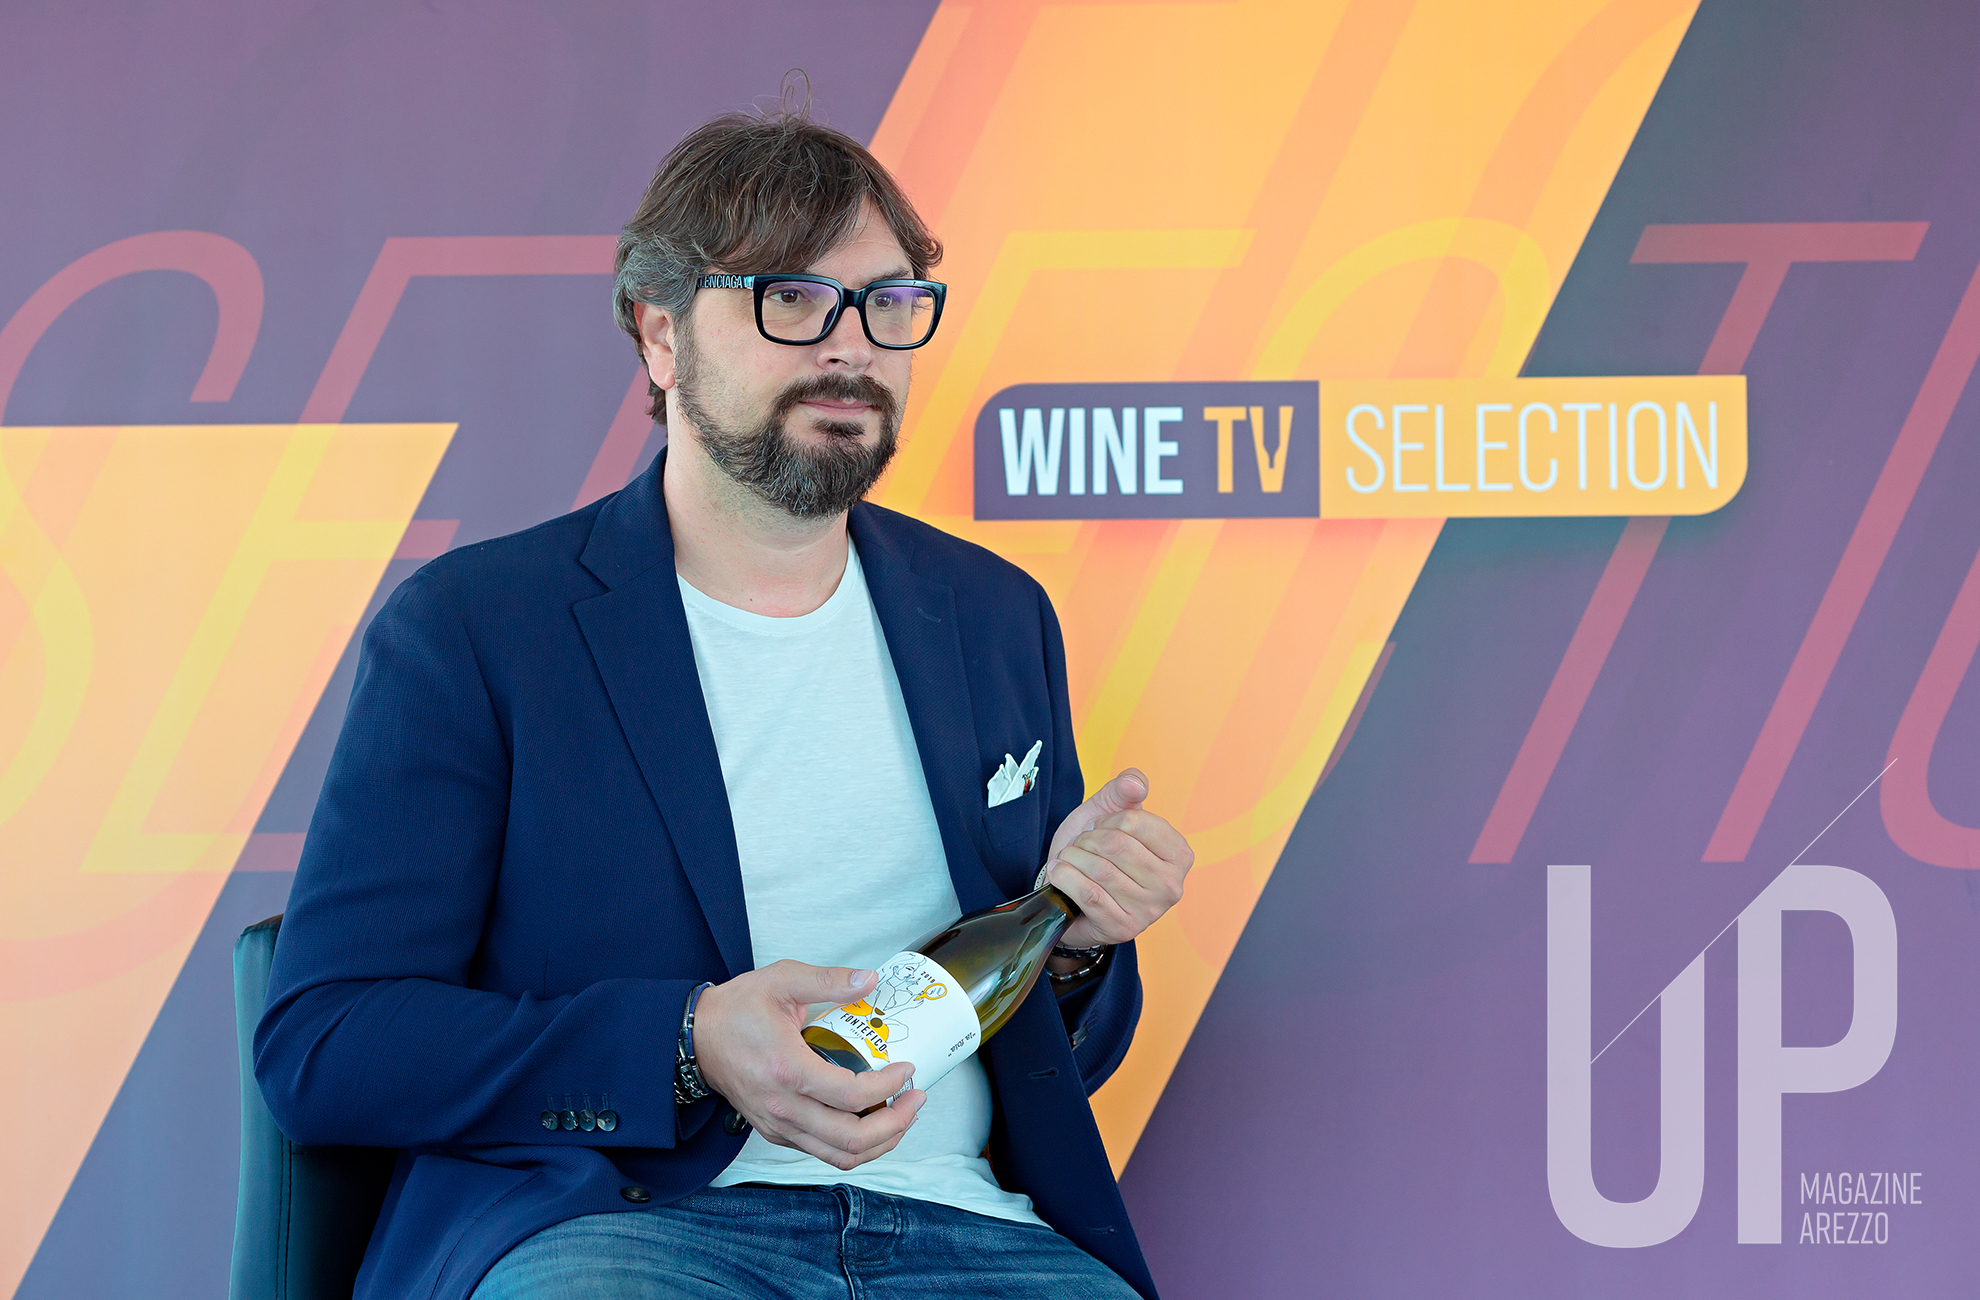 Wine TV